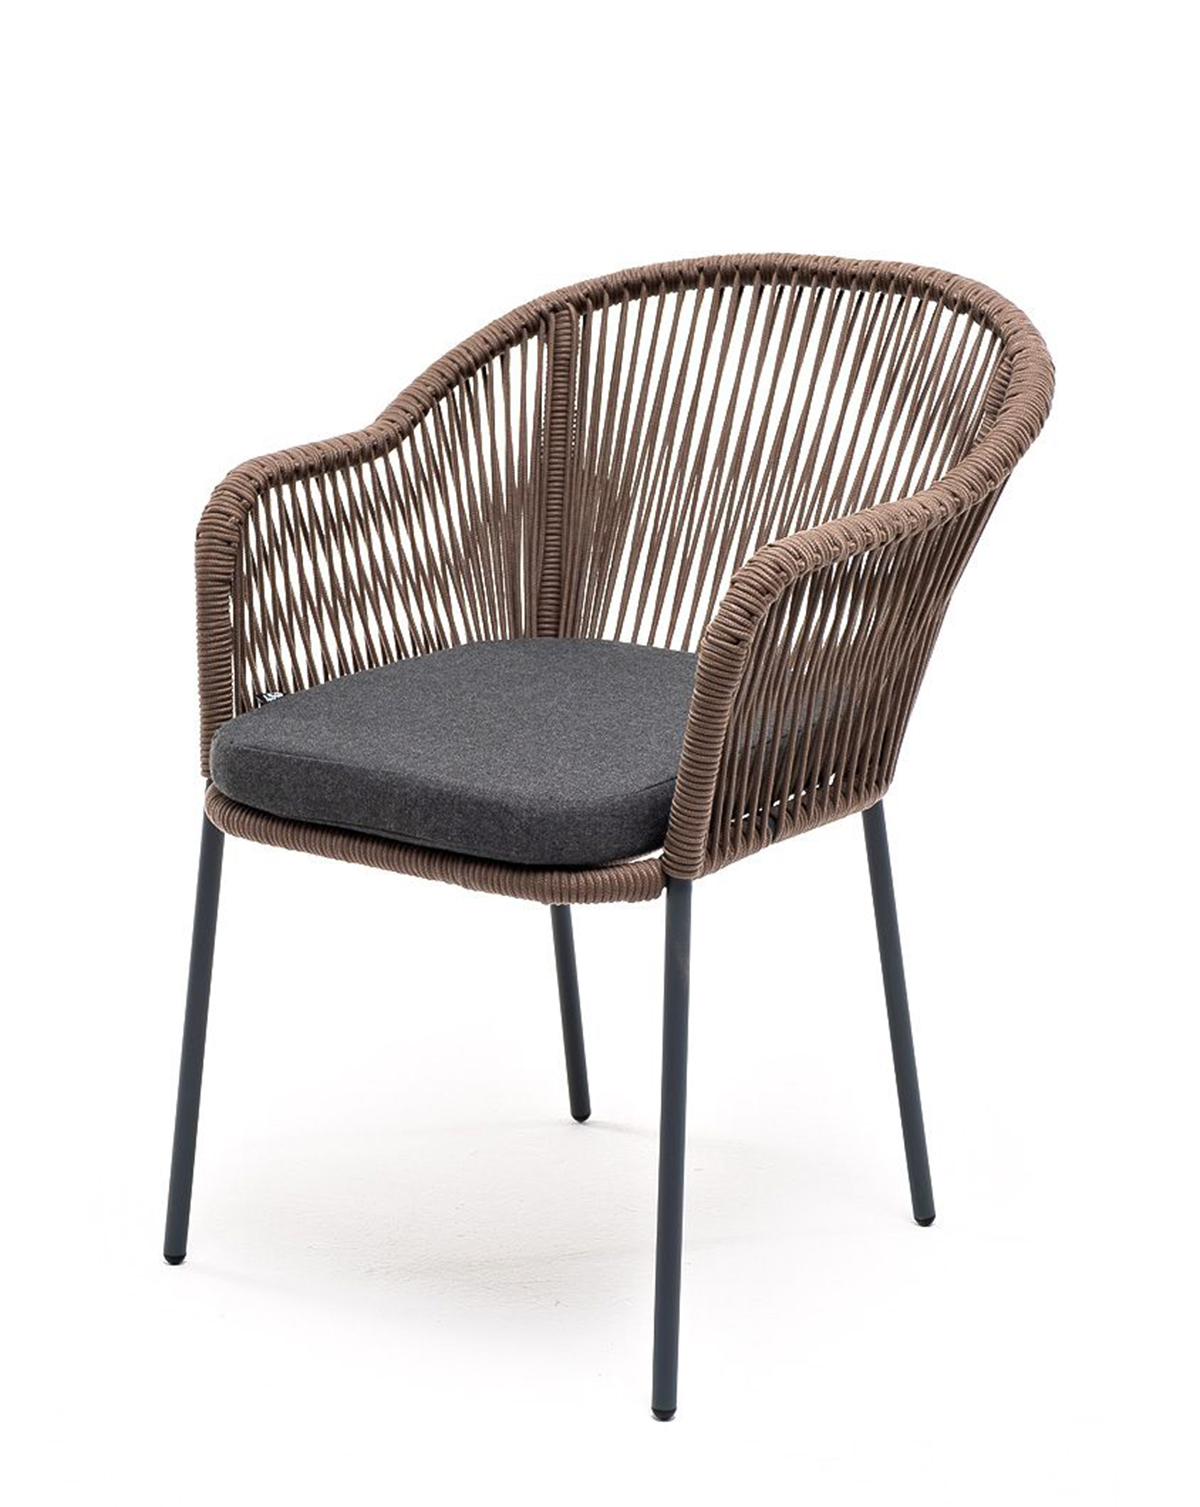 Плетеный стул из роупа Лион серо-коричневый муж брюки марио коричневый р 50